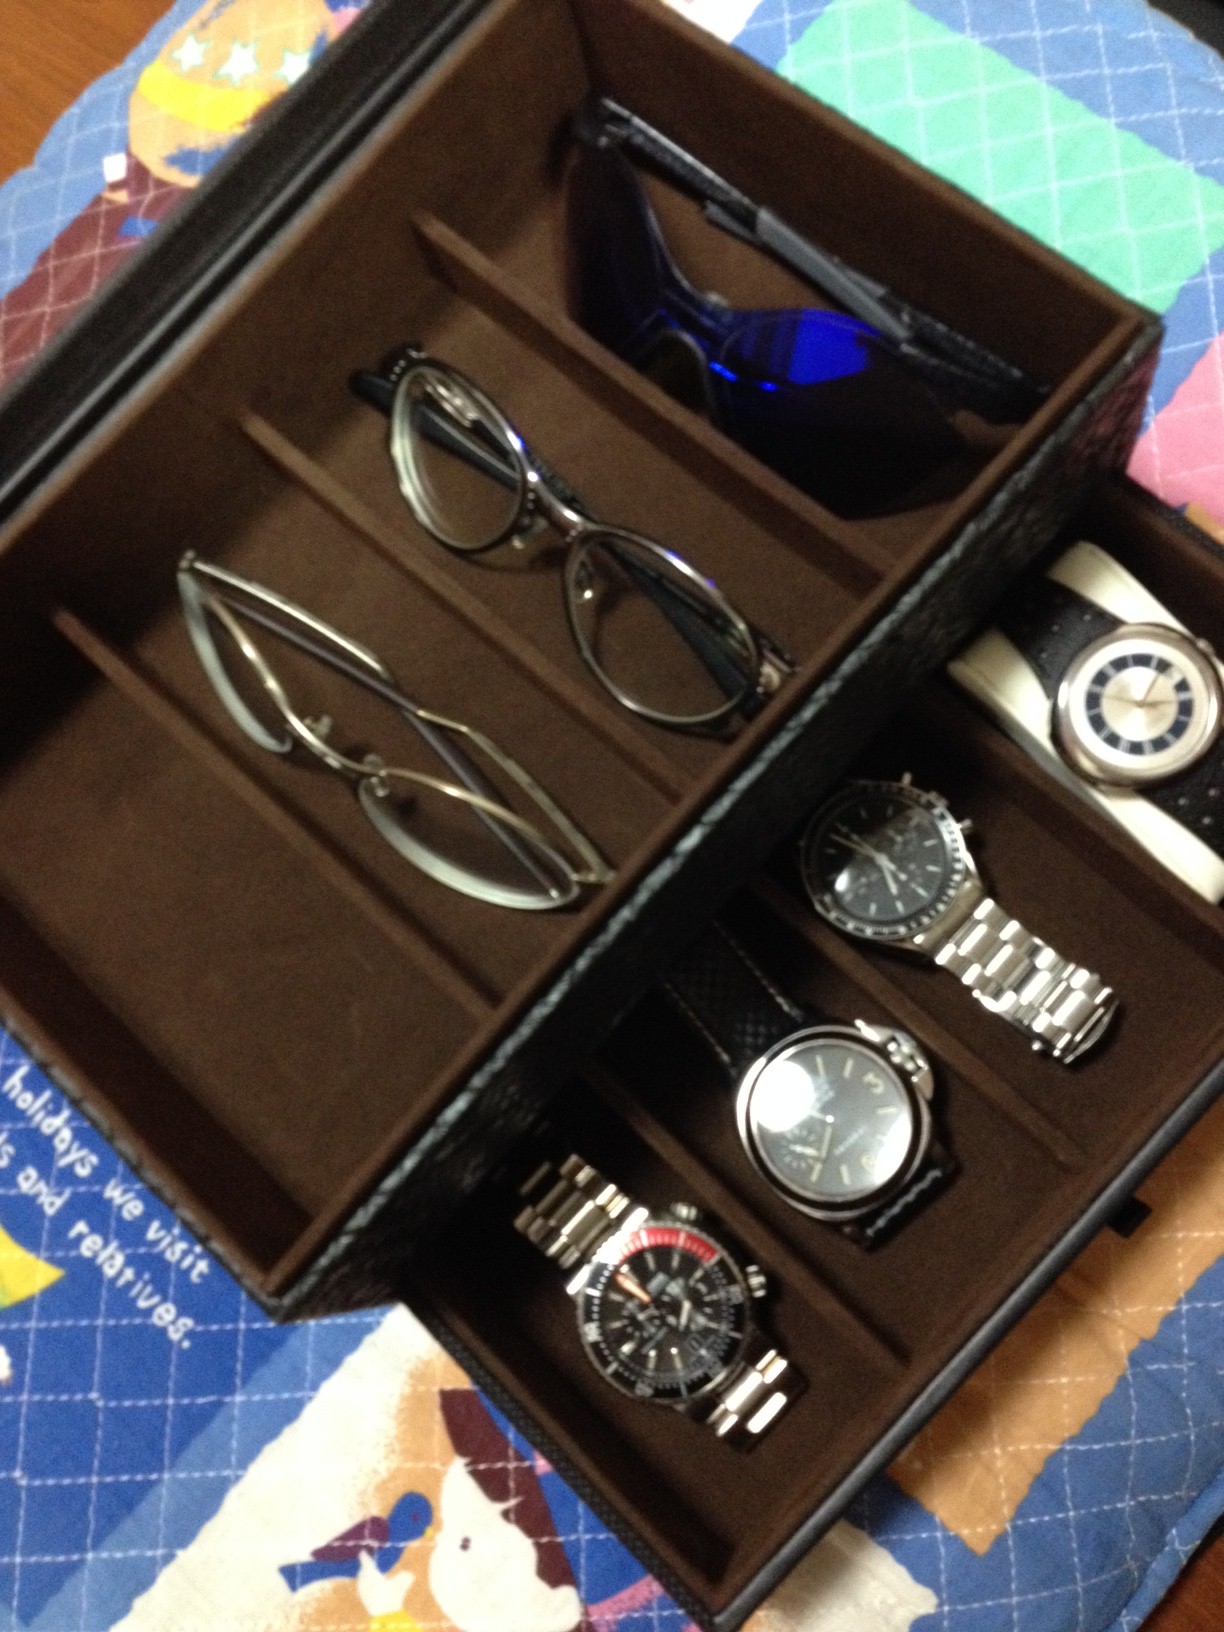 楽天市場 アウトレット メガネケース コレクションケース 時計収納 8本収納 引出し メガネ 眼鏡 腕時計 収納 コレクション ボックス 雑貨店days Select みんなのレビュー 口コミ